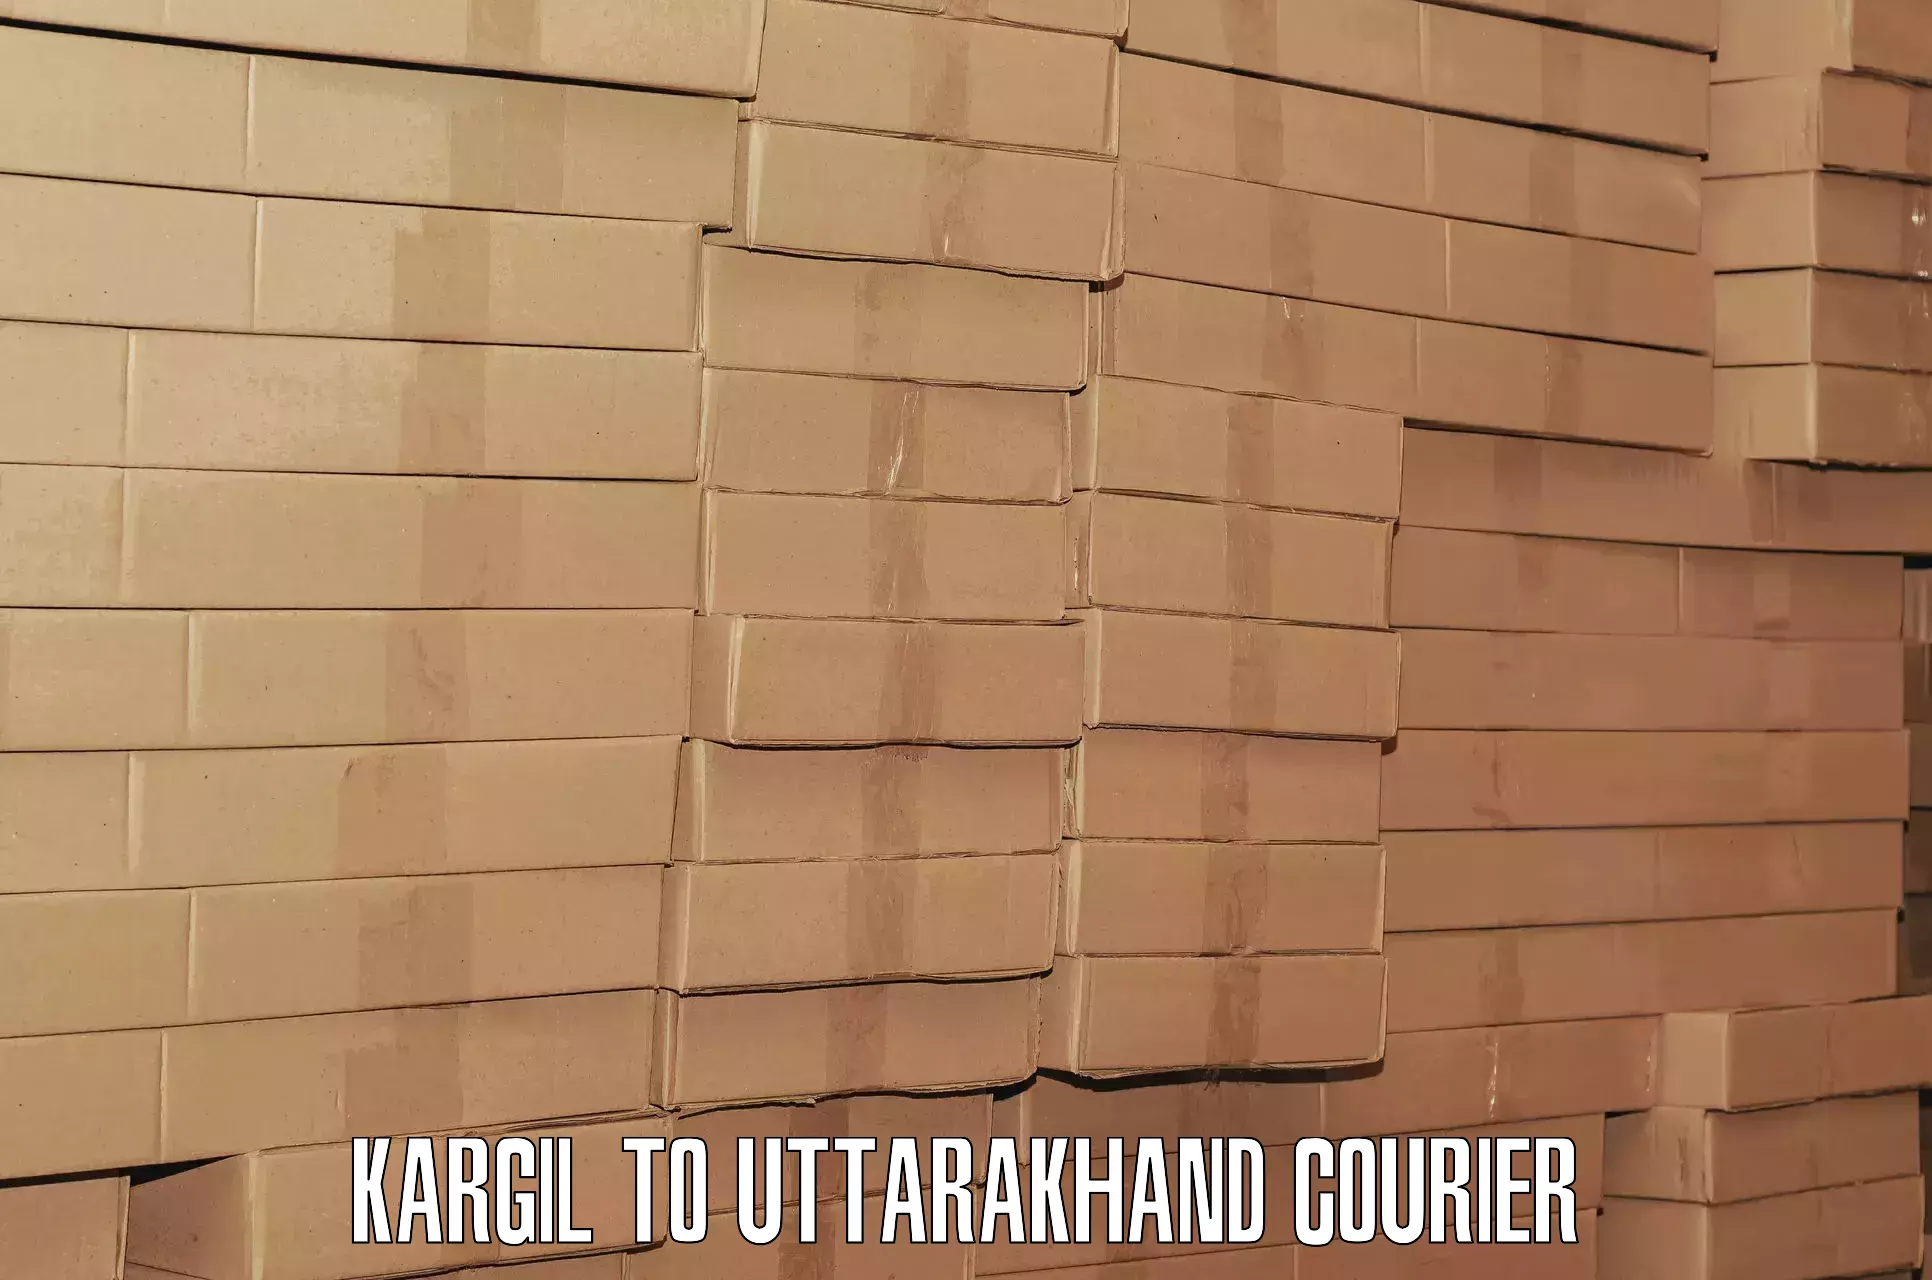 Luggage transport consulting Kargil to Gopeshwar